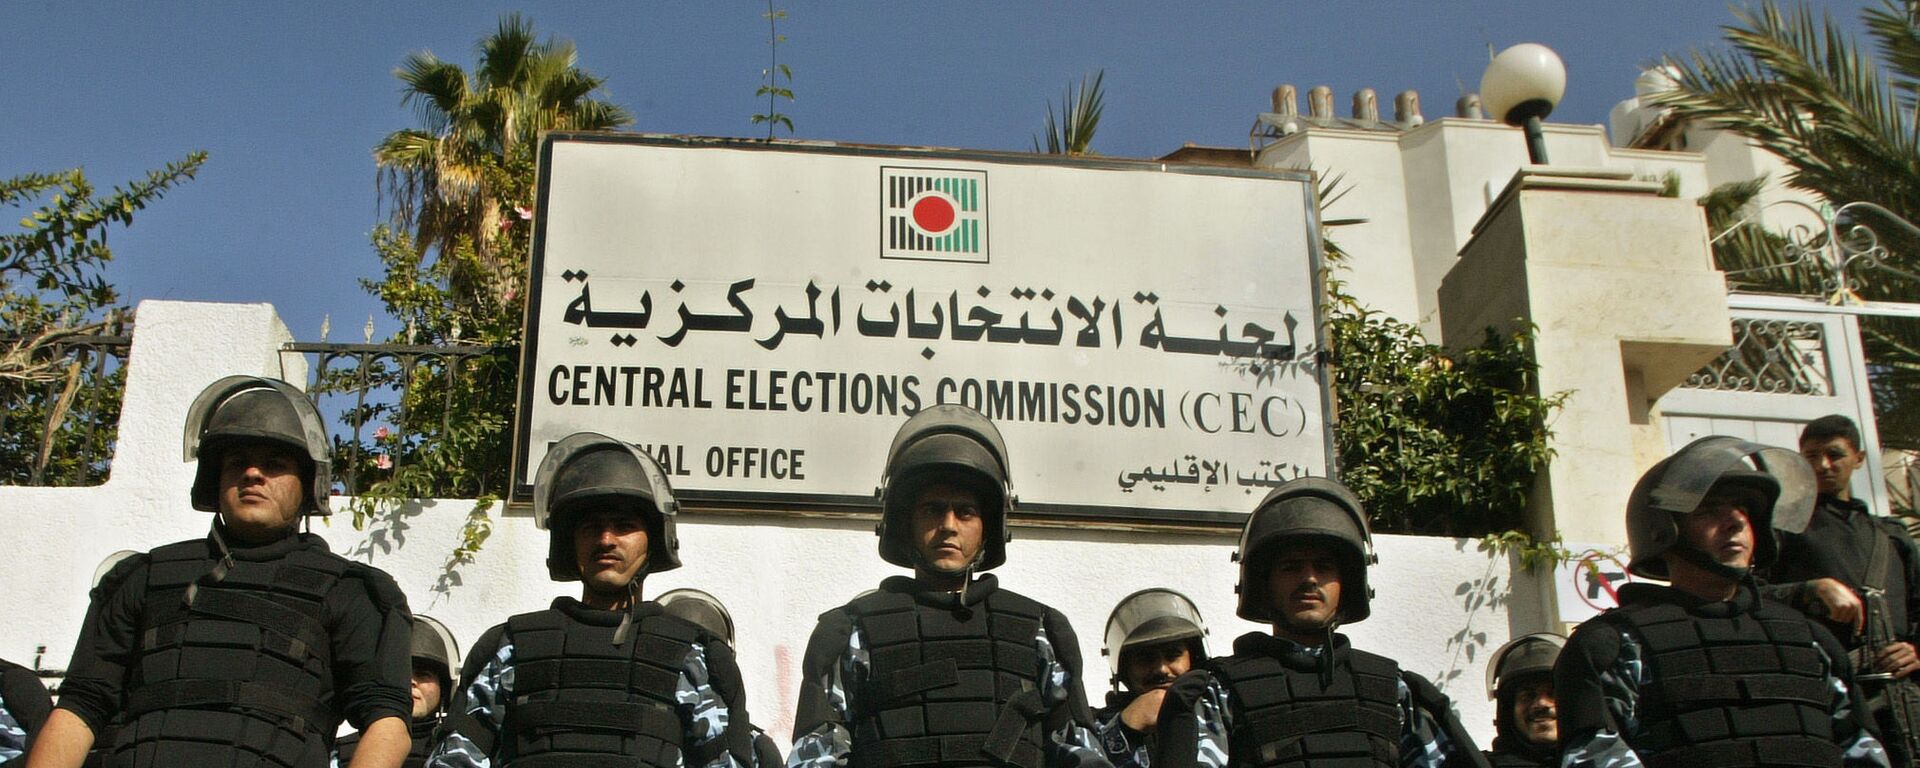 لجنة الانتخابات المركزية - فلسطين، مدينة غزة، 2006  - سبوتنيك عربي, 1920, 28.03.2022